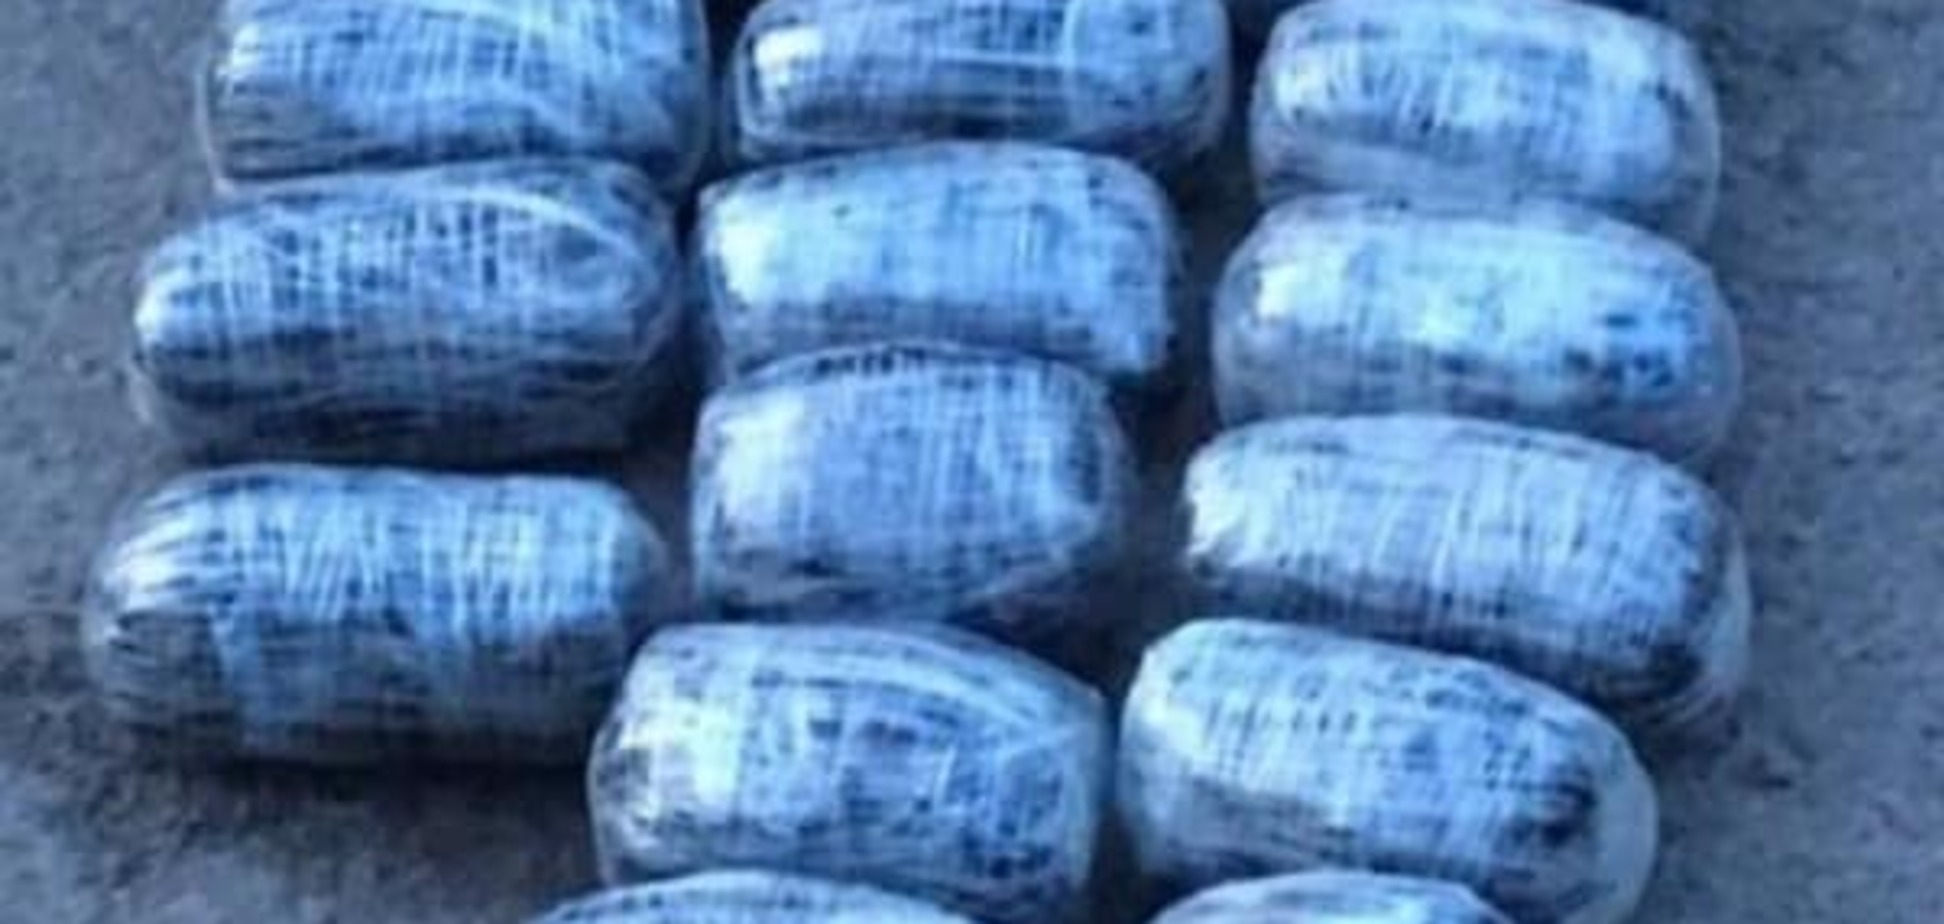 Рекордний урожай: партію з семи кілограмів наркотиків затримали на Волині  